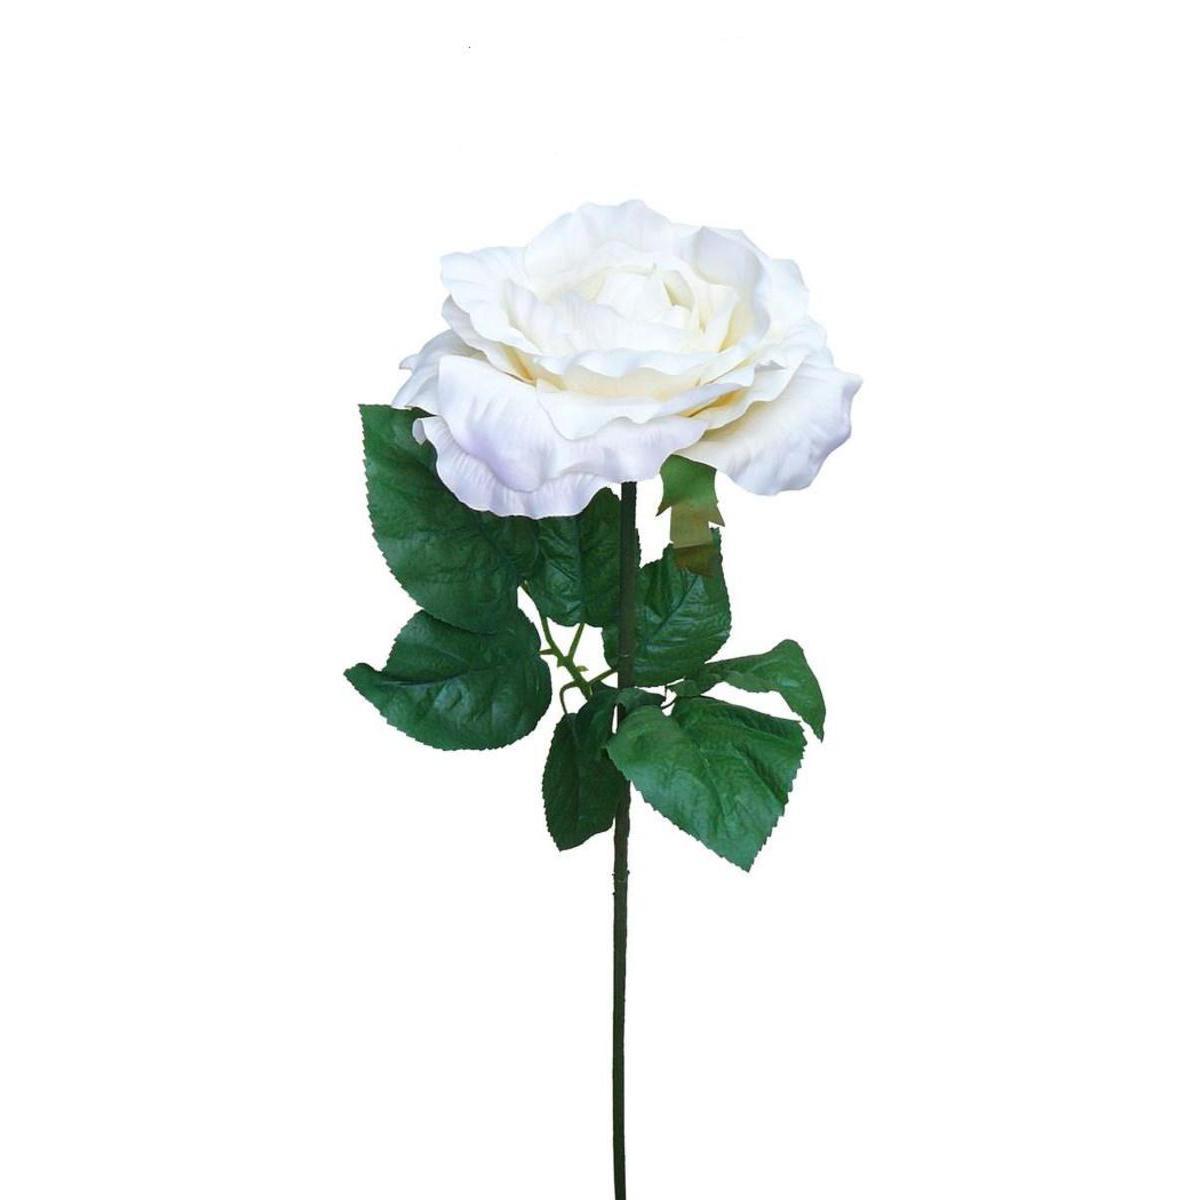 Tige rose géante de luxe - Polyester - 103 cm - Blanc